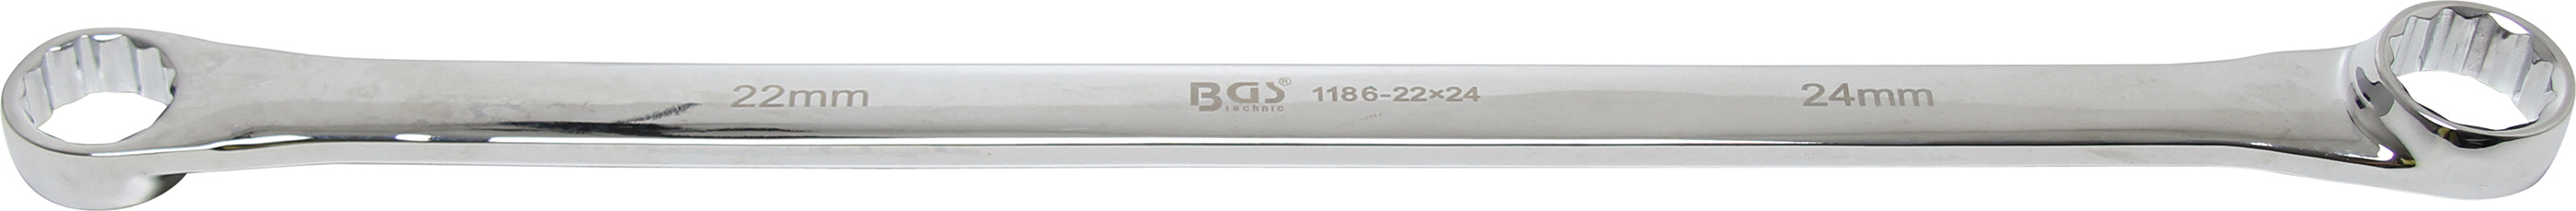 BGS 1186-22X24mm Cheie inelara dreapta, Extra lunga